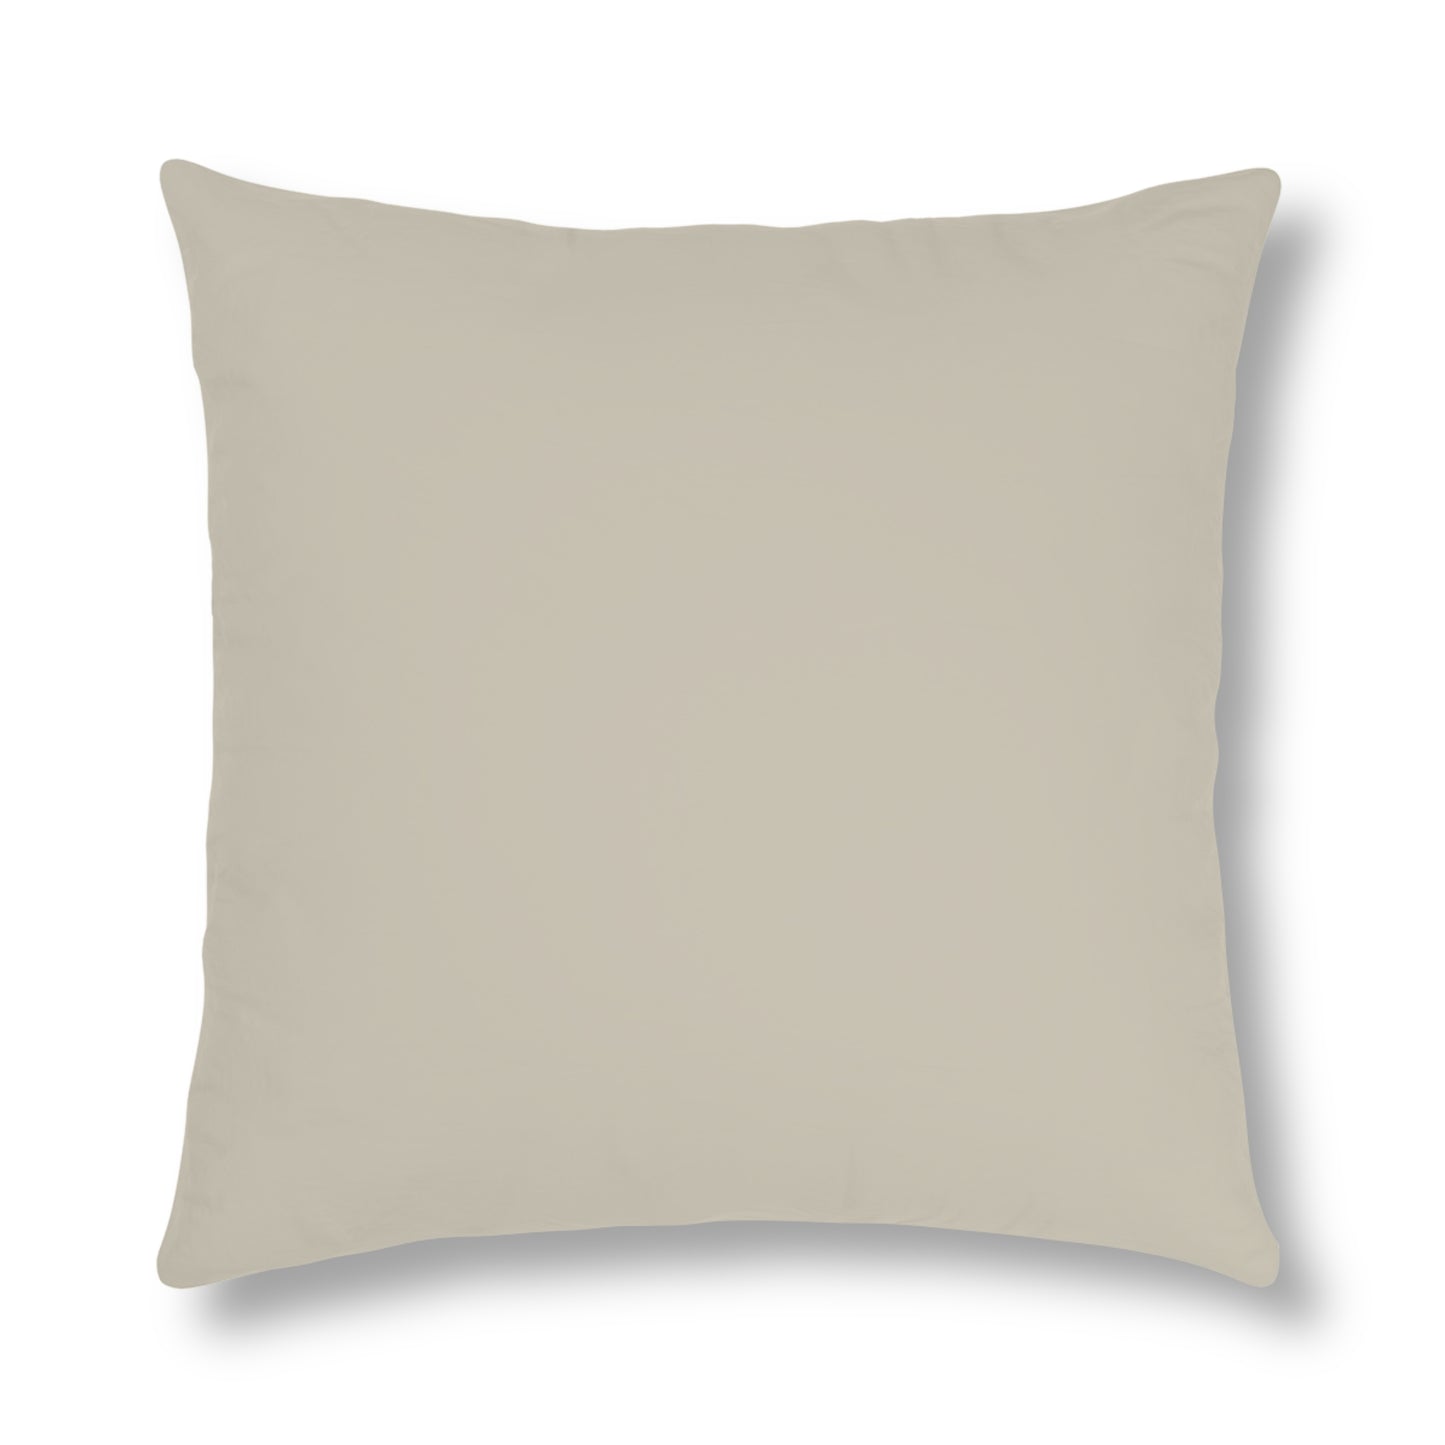 Fancy Like Sand Background - Waterproof Pillow